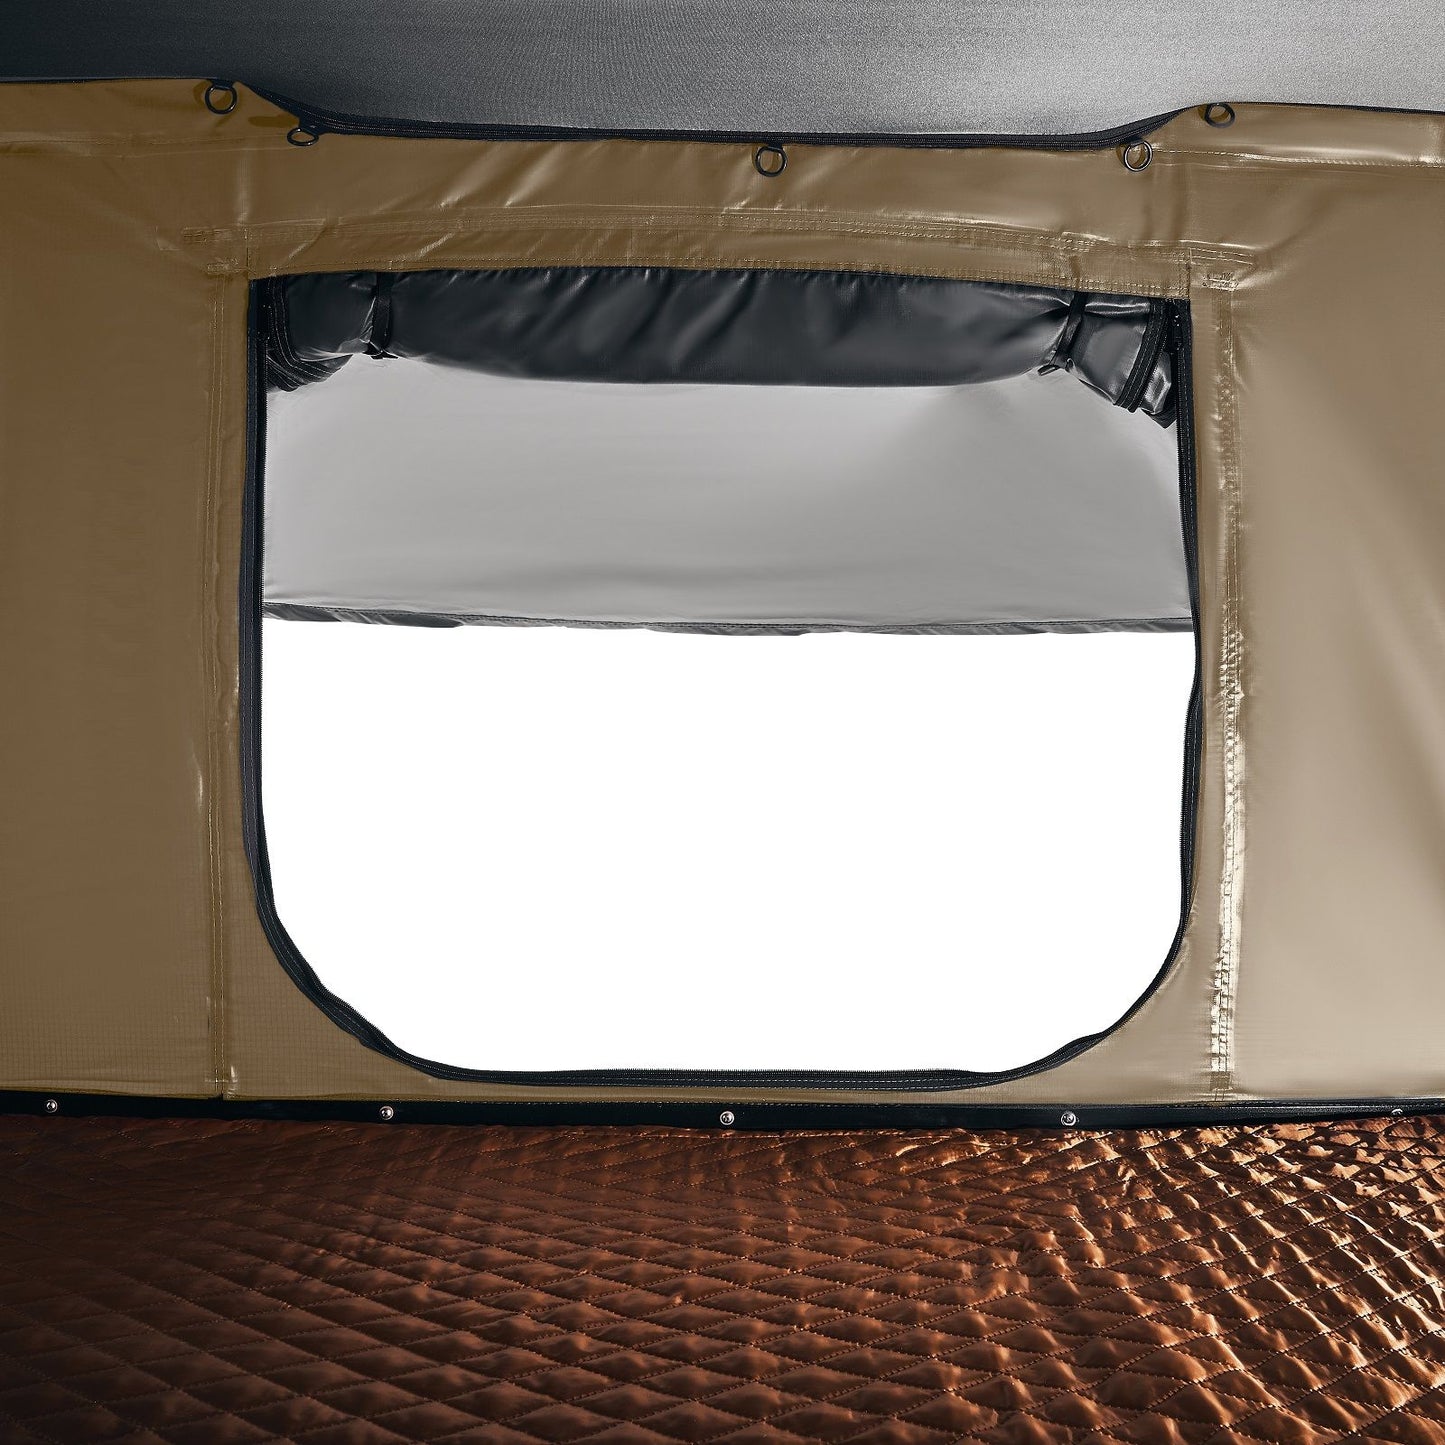 אוהל גג רכב חזק עם מעטפת קשיח יוטה 148 ס"מ (אוטומטי)